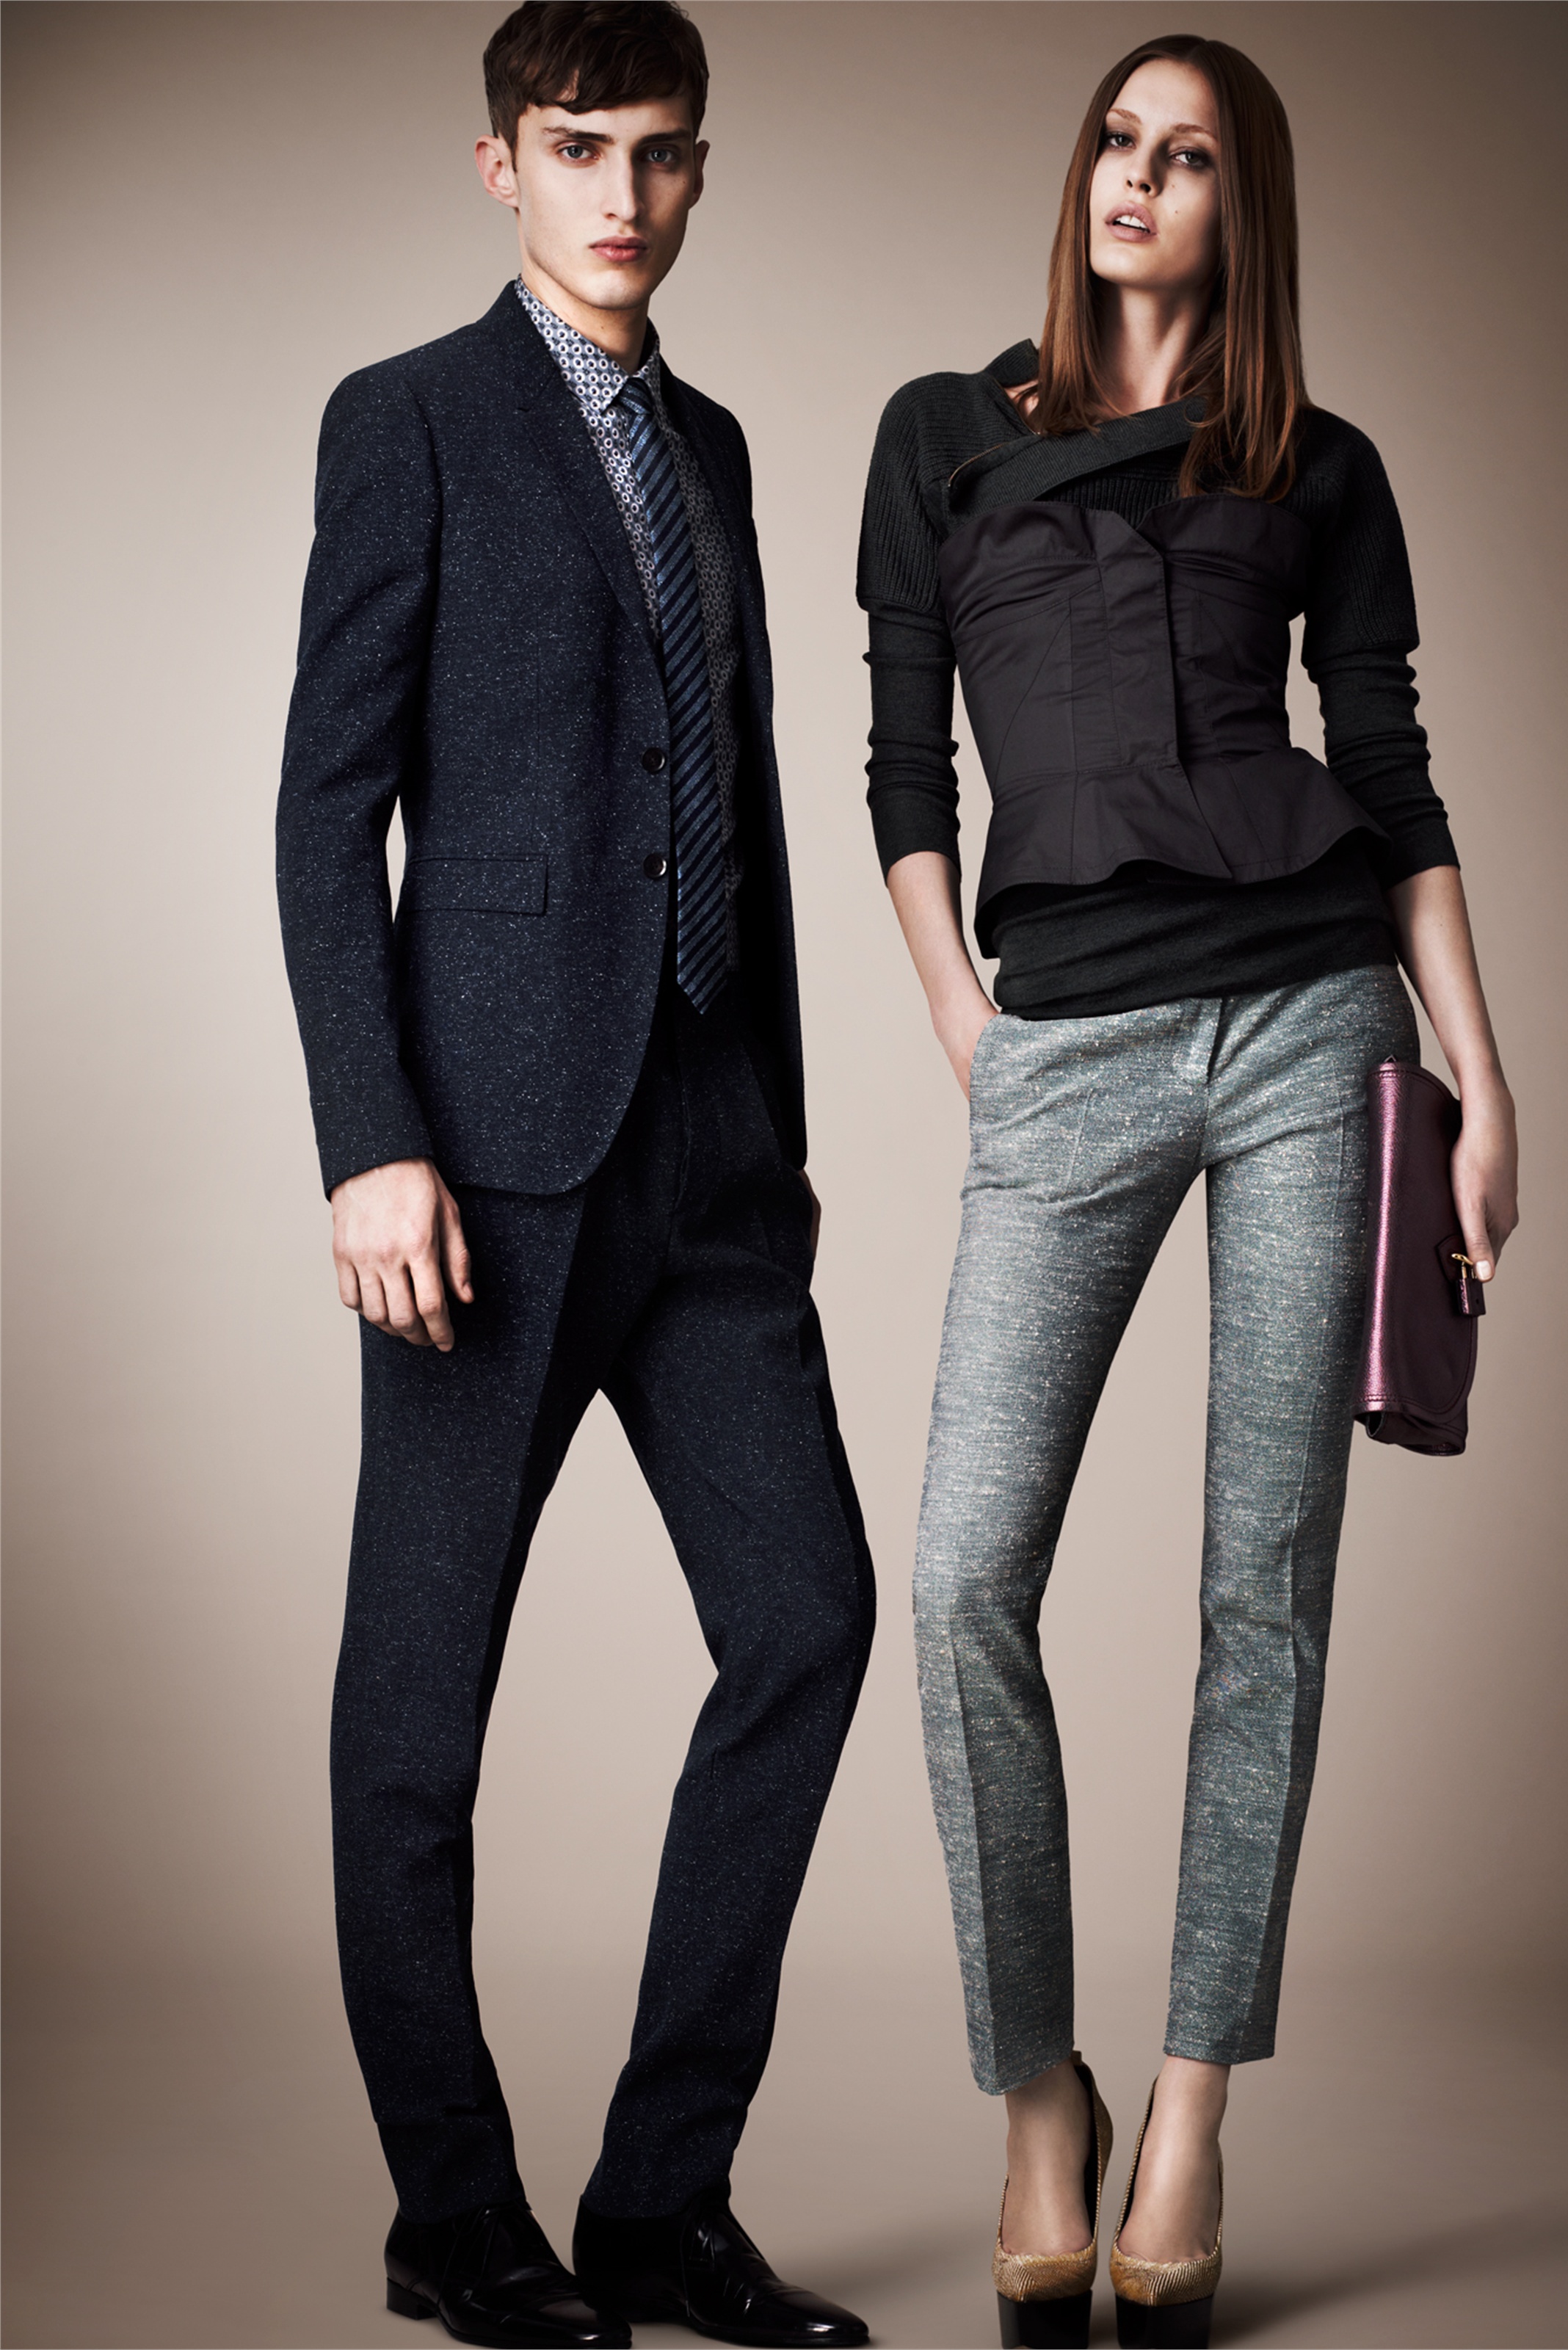 Его отец высокий и худощавый. Burberry Prorsum коллекция 2013. Современный стиль одежды. Современная стильная одежда. Женская и мужская одежда классика.